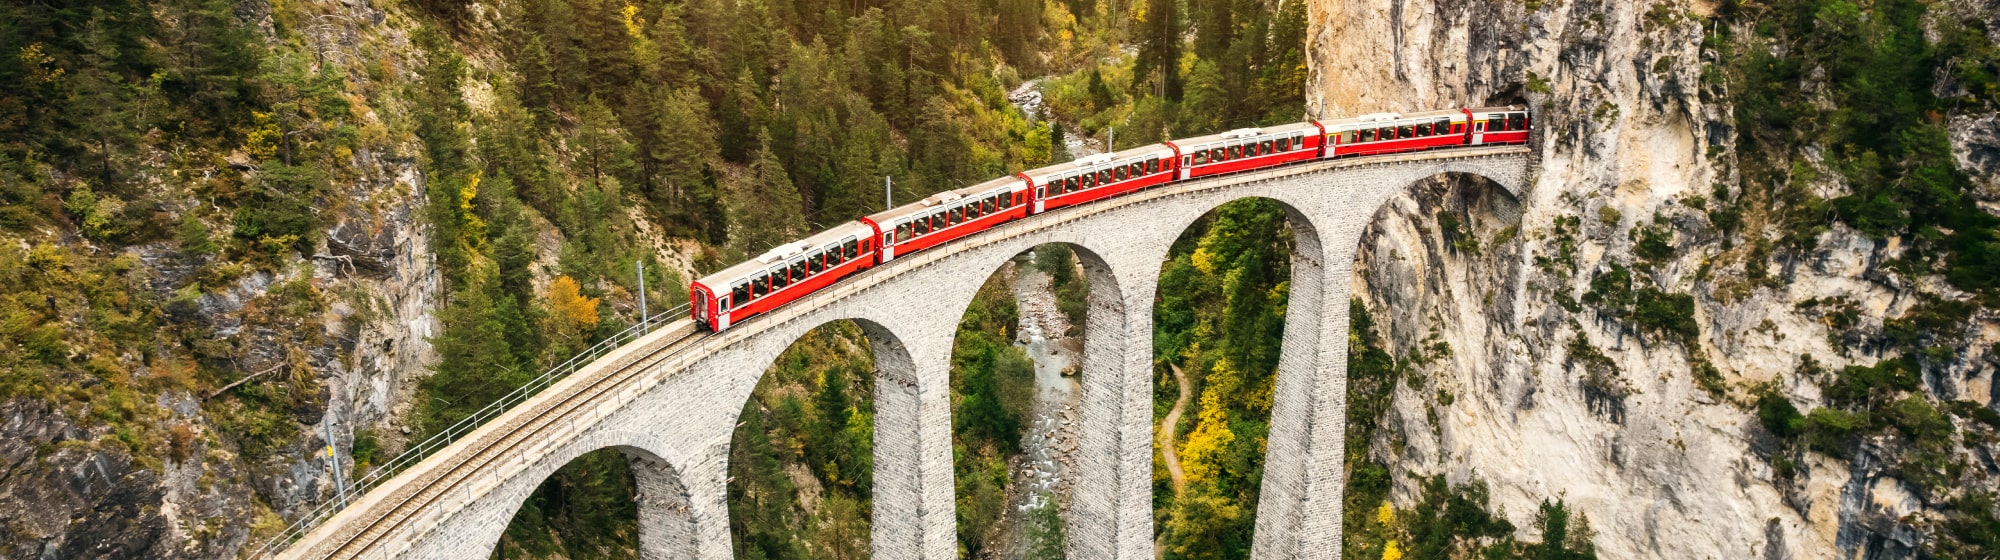 Vue panoramique d'un train sur un pont